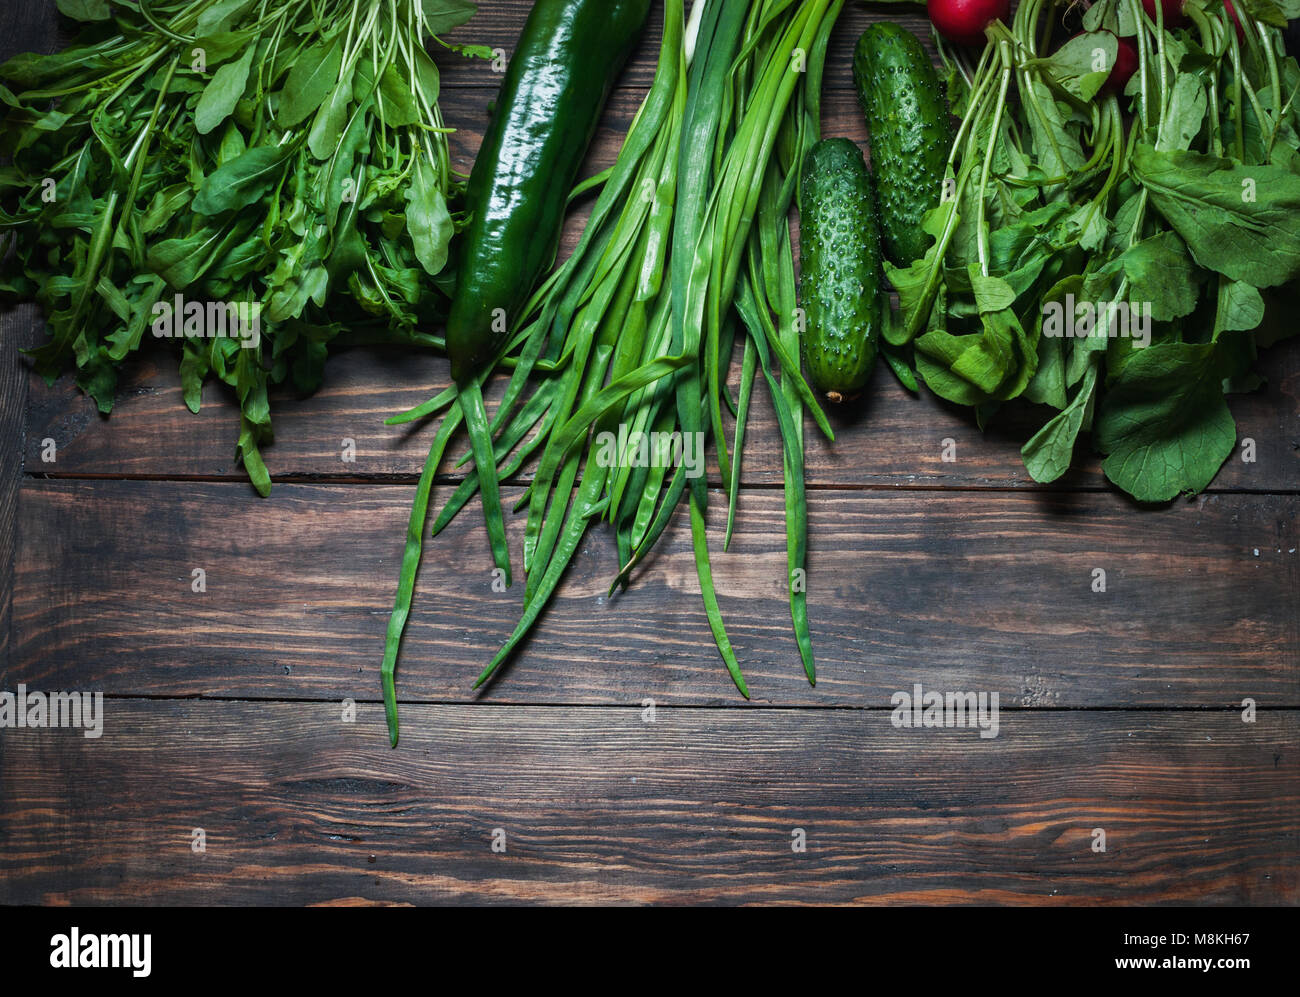 Frühling Hintergrund mit frischen saftigen Gemüse wie grüne Zwiebeln, Rucola, Gurken und Radieschen. Gesunde Ernährung Konzept. Veganes essen. Platz für writi Stockfoto